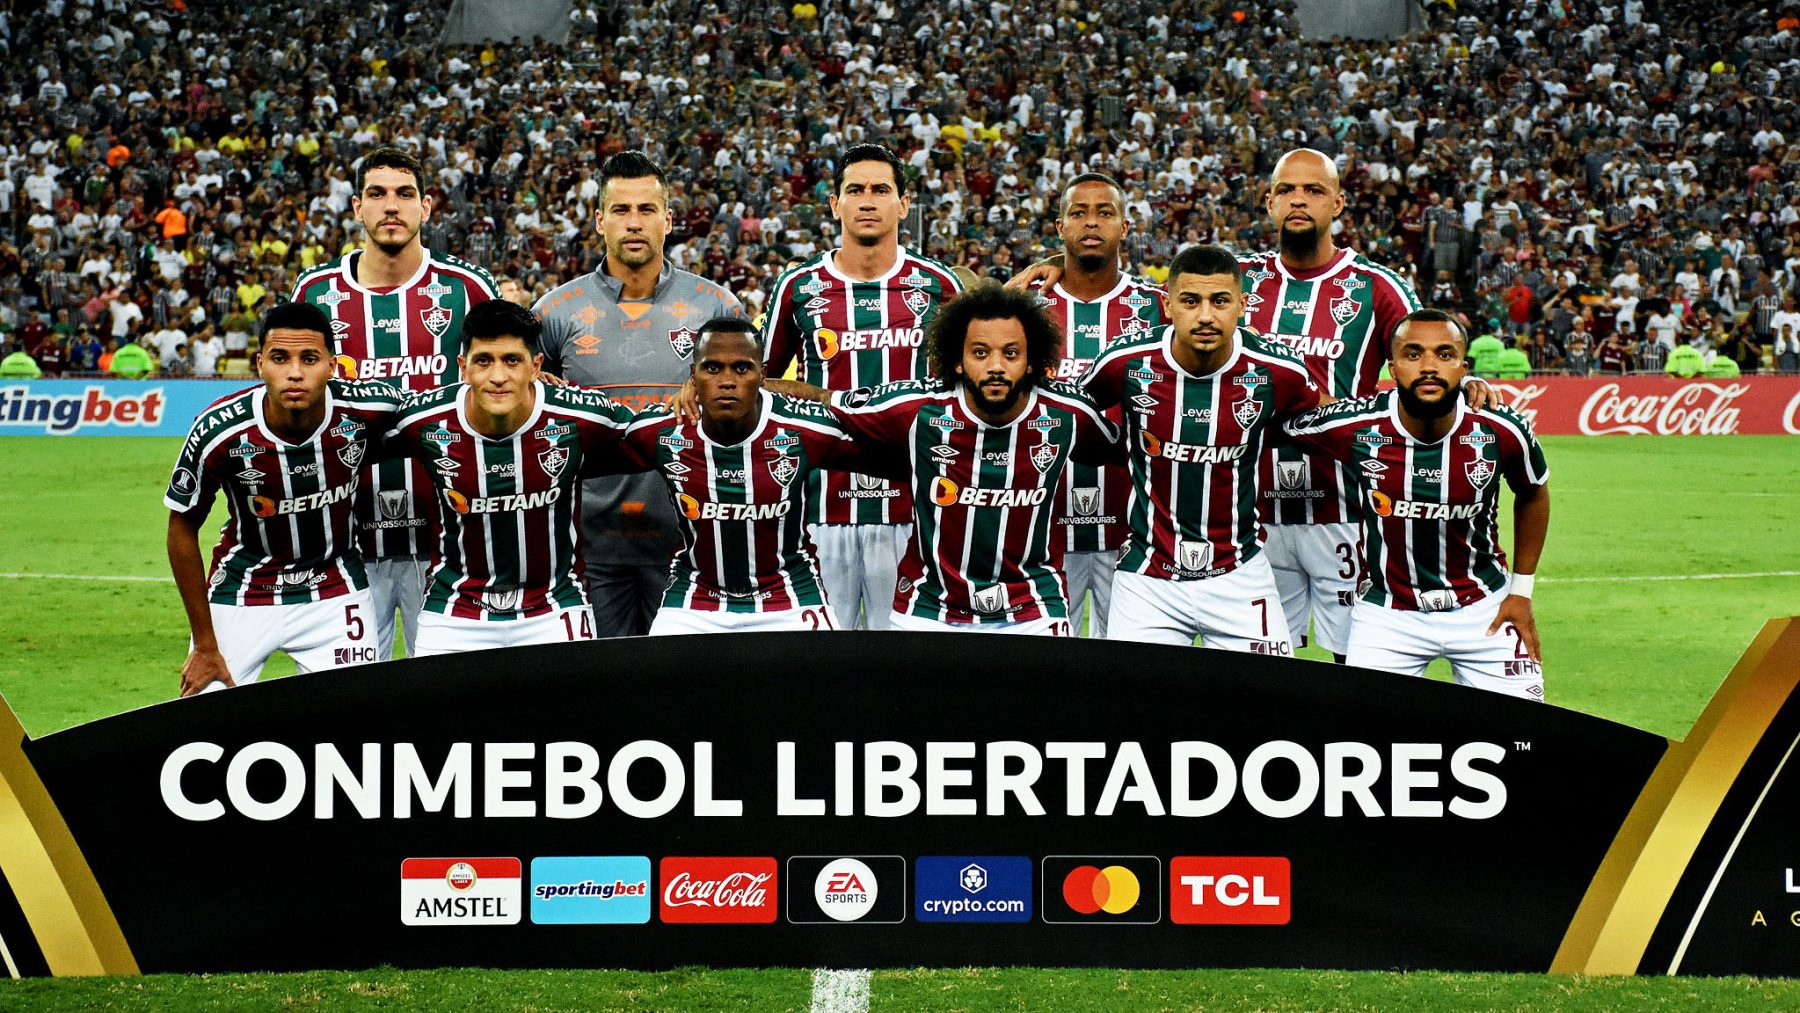 De volta ao Mineirão agora pelo Fluminense, Guga ganha nova